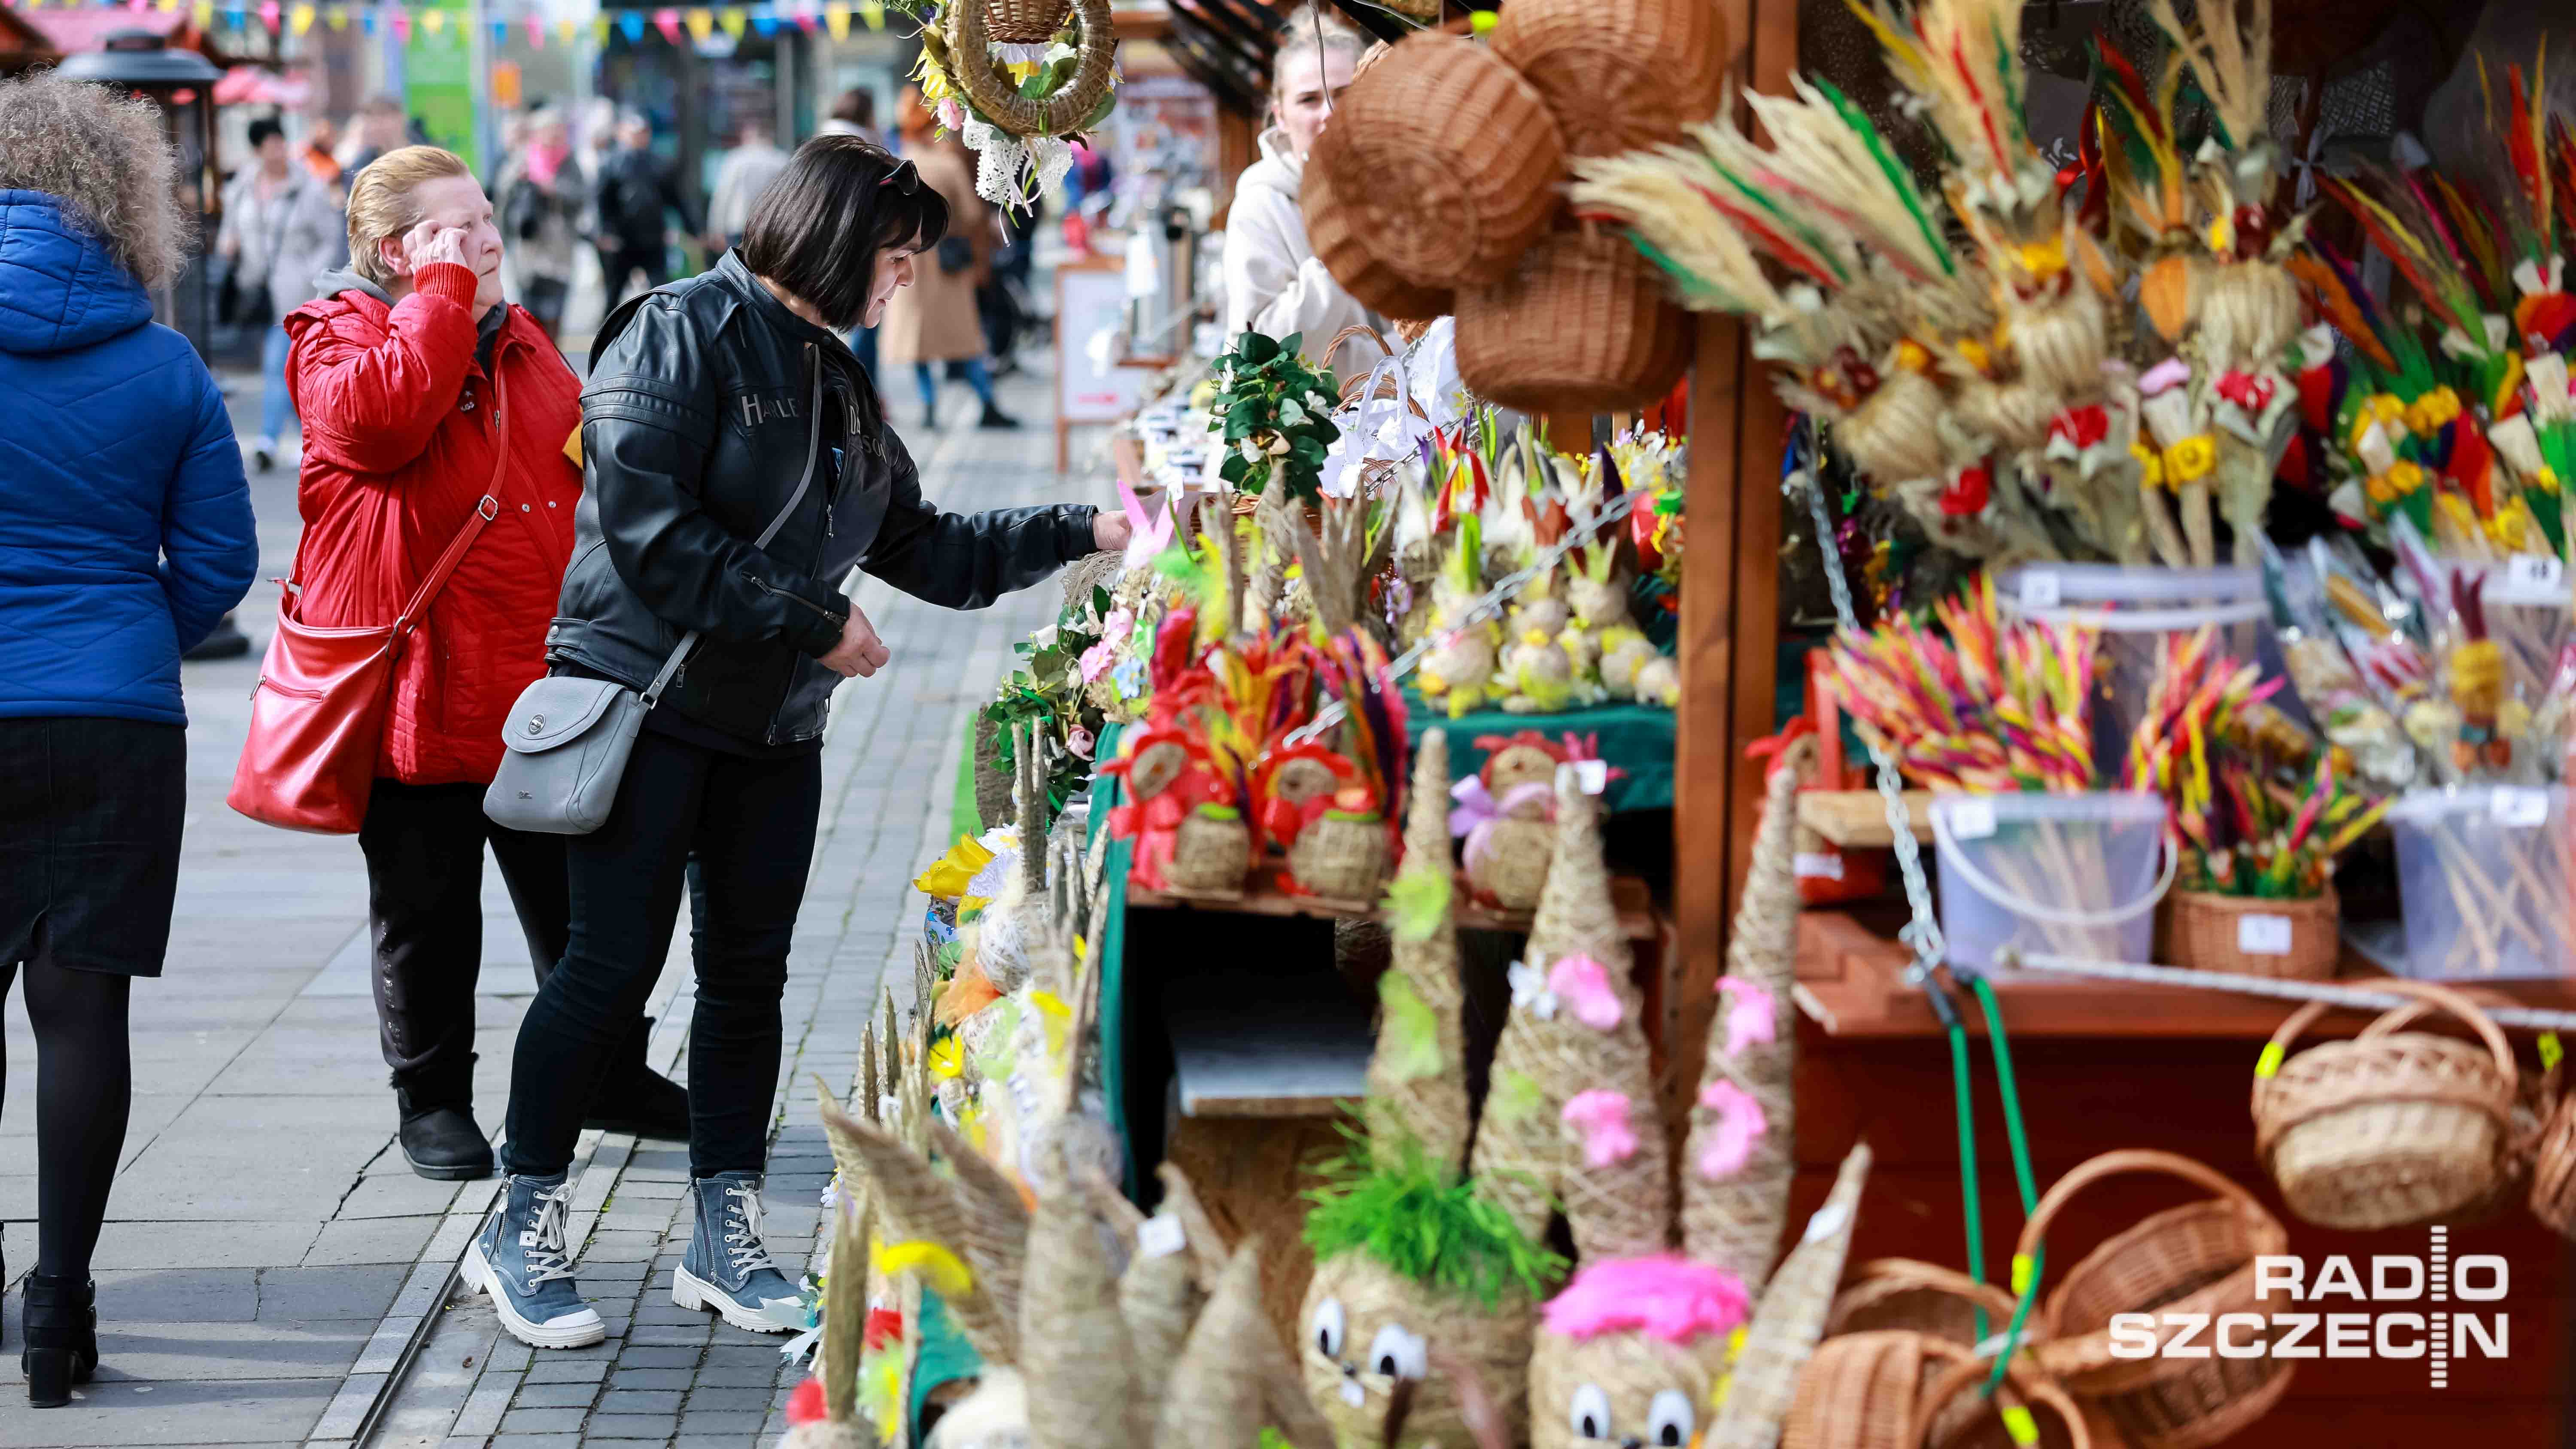 Trwa drugi dzień szczecińskiego Jarmarku Wielkanocnego. Na mieszkańców wzdłuż alei Kwiatowej czekają drewniane stoiska z jedzeniem, słodyczami i rękodziełem.